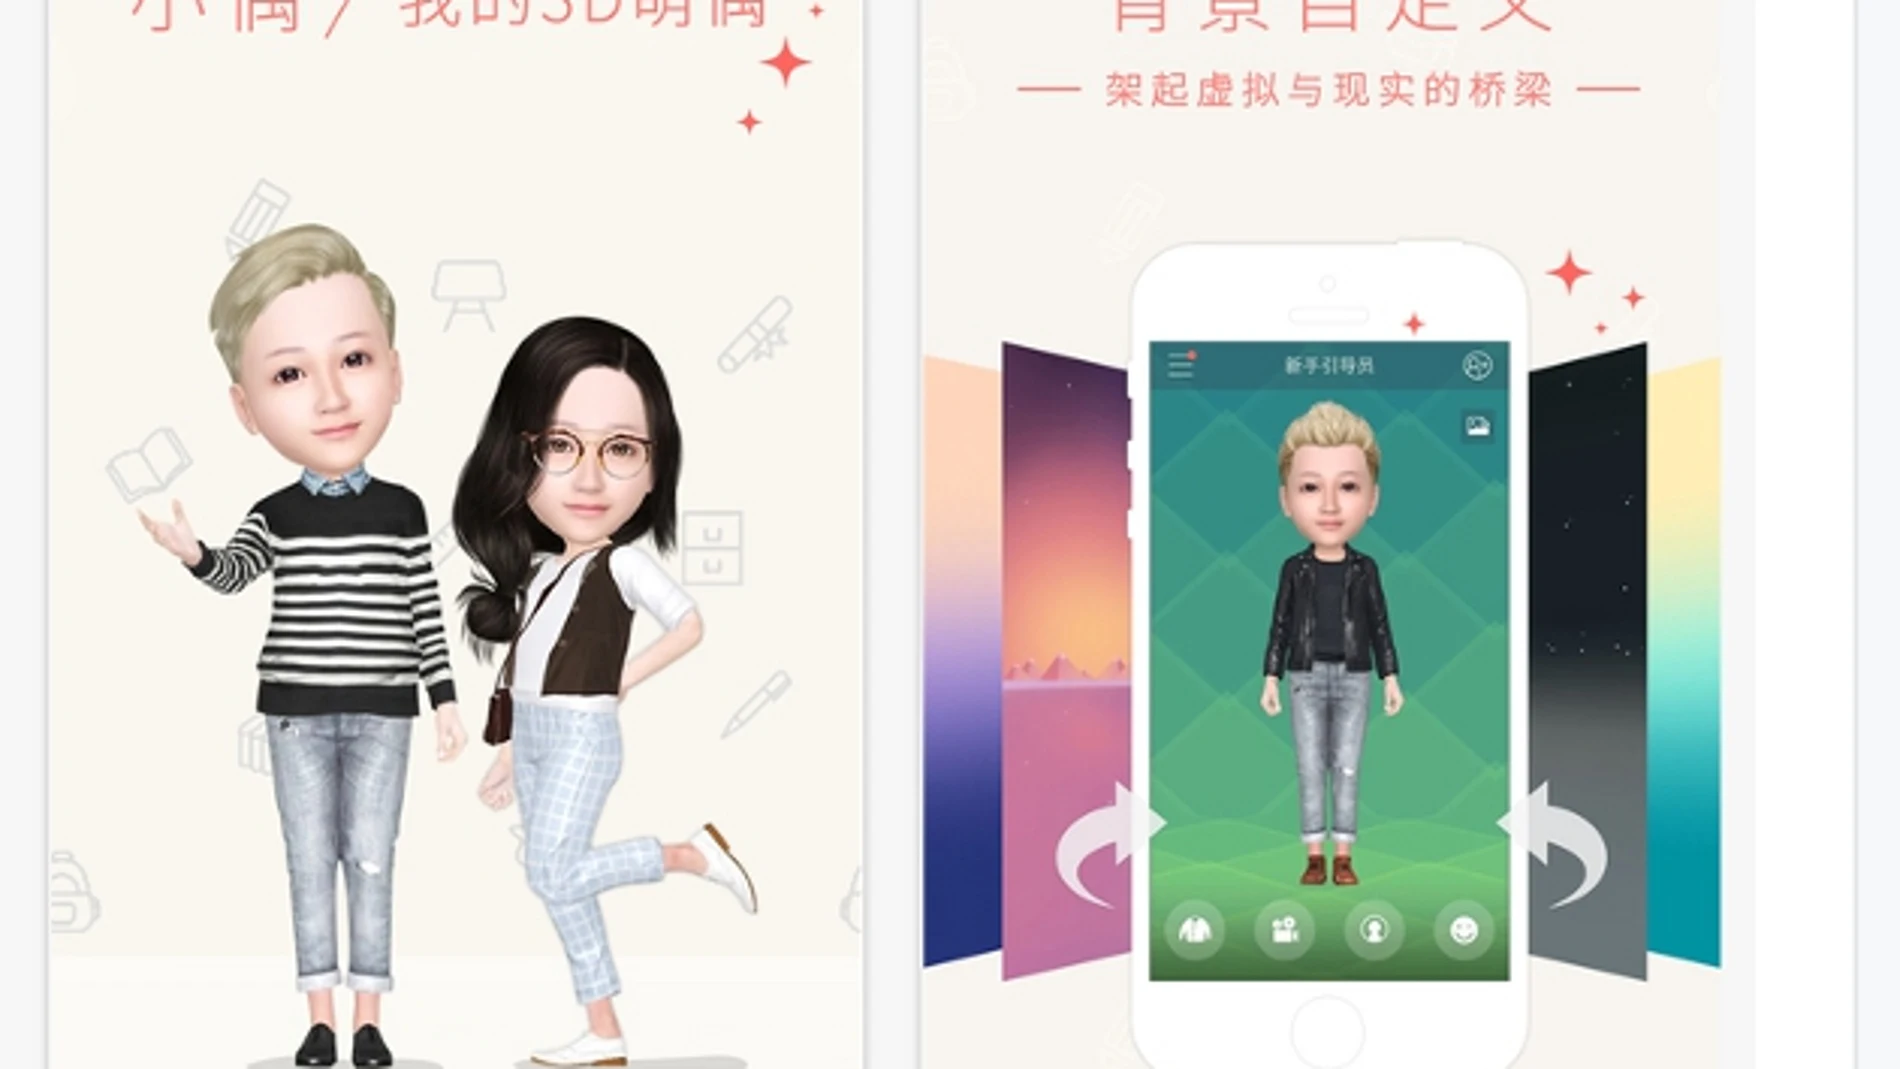 My Idol, la app que permite convertir selfies en avatares